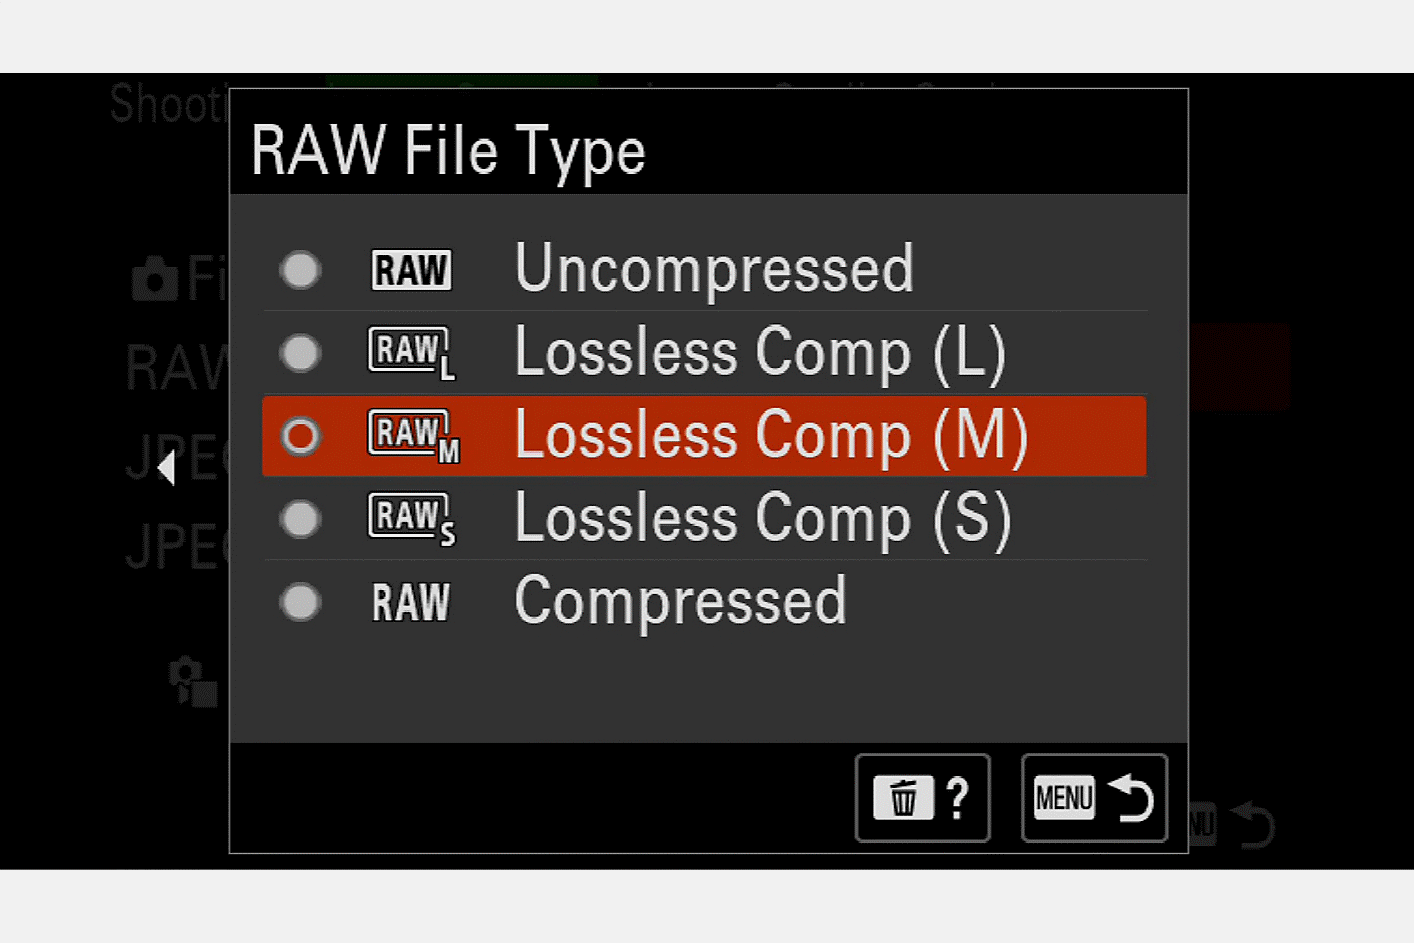 Immagine del display della fotocamera per la selezione del tipo di file RAW